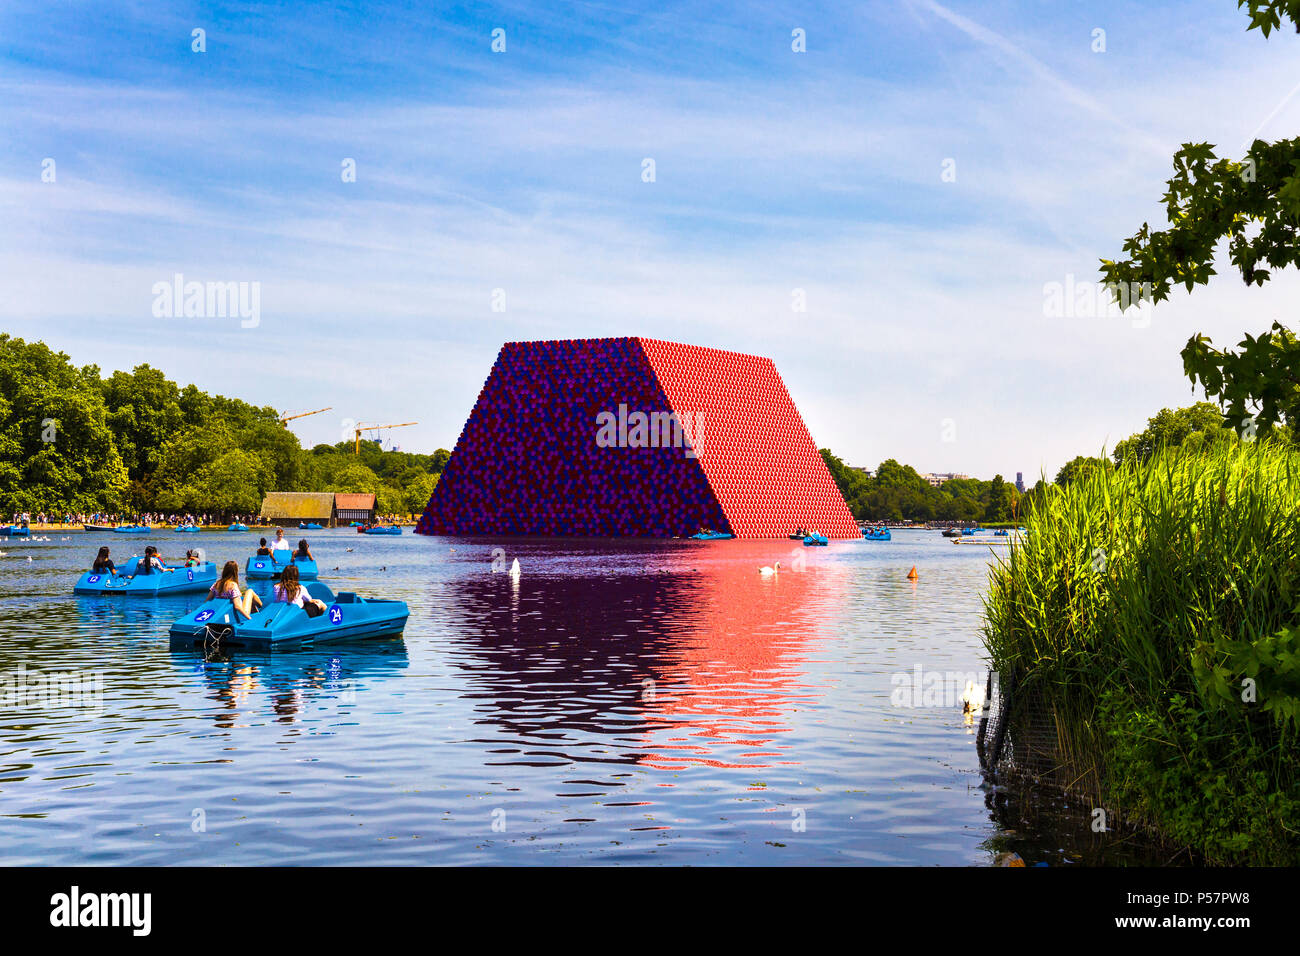 Giugno 2018 - Mastaba scultura di Christo e Jeanne-Claude flottante nel lago a serpentina in Hyde Park, London, Regno Unito Foto Stock